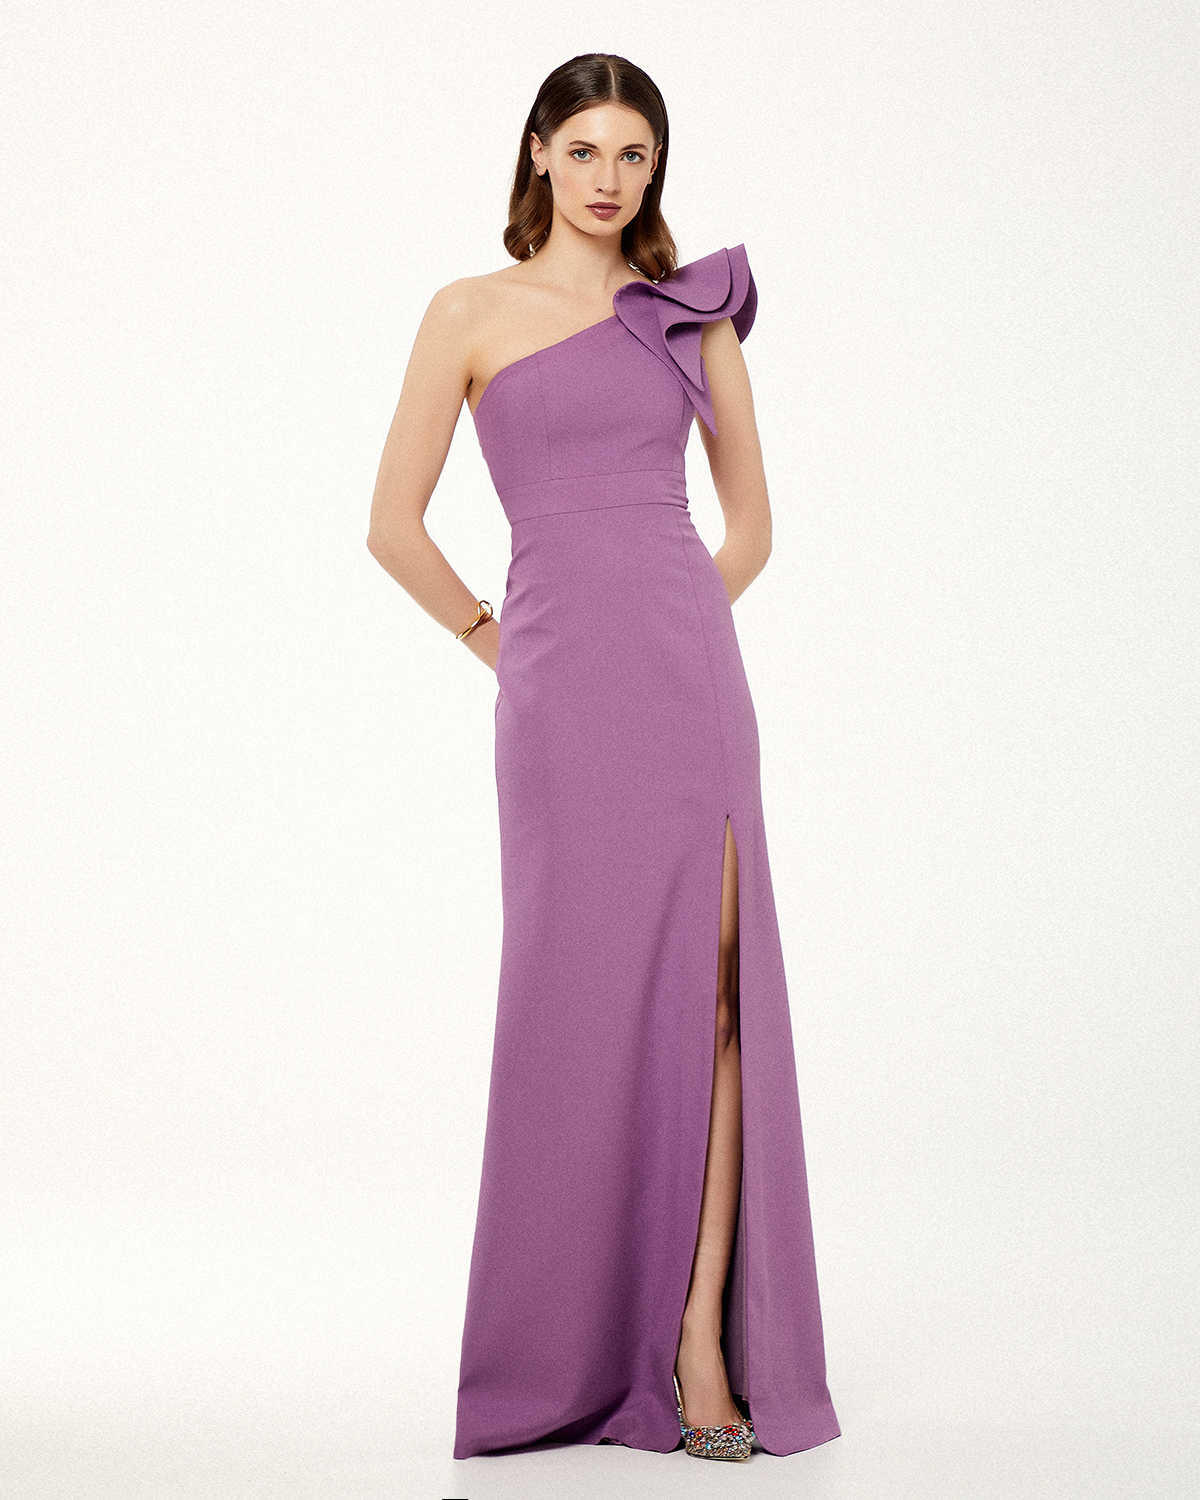 Cocktail Dresses / One shoulder long cocktail dress